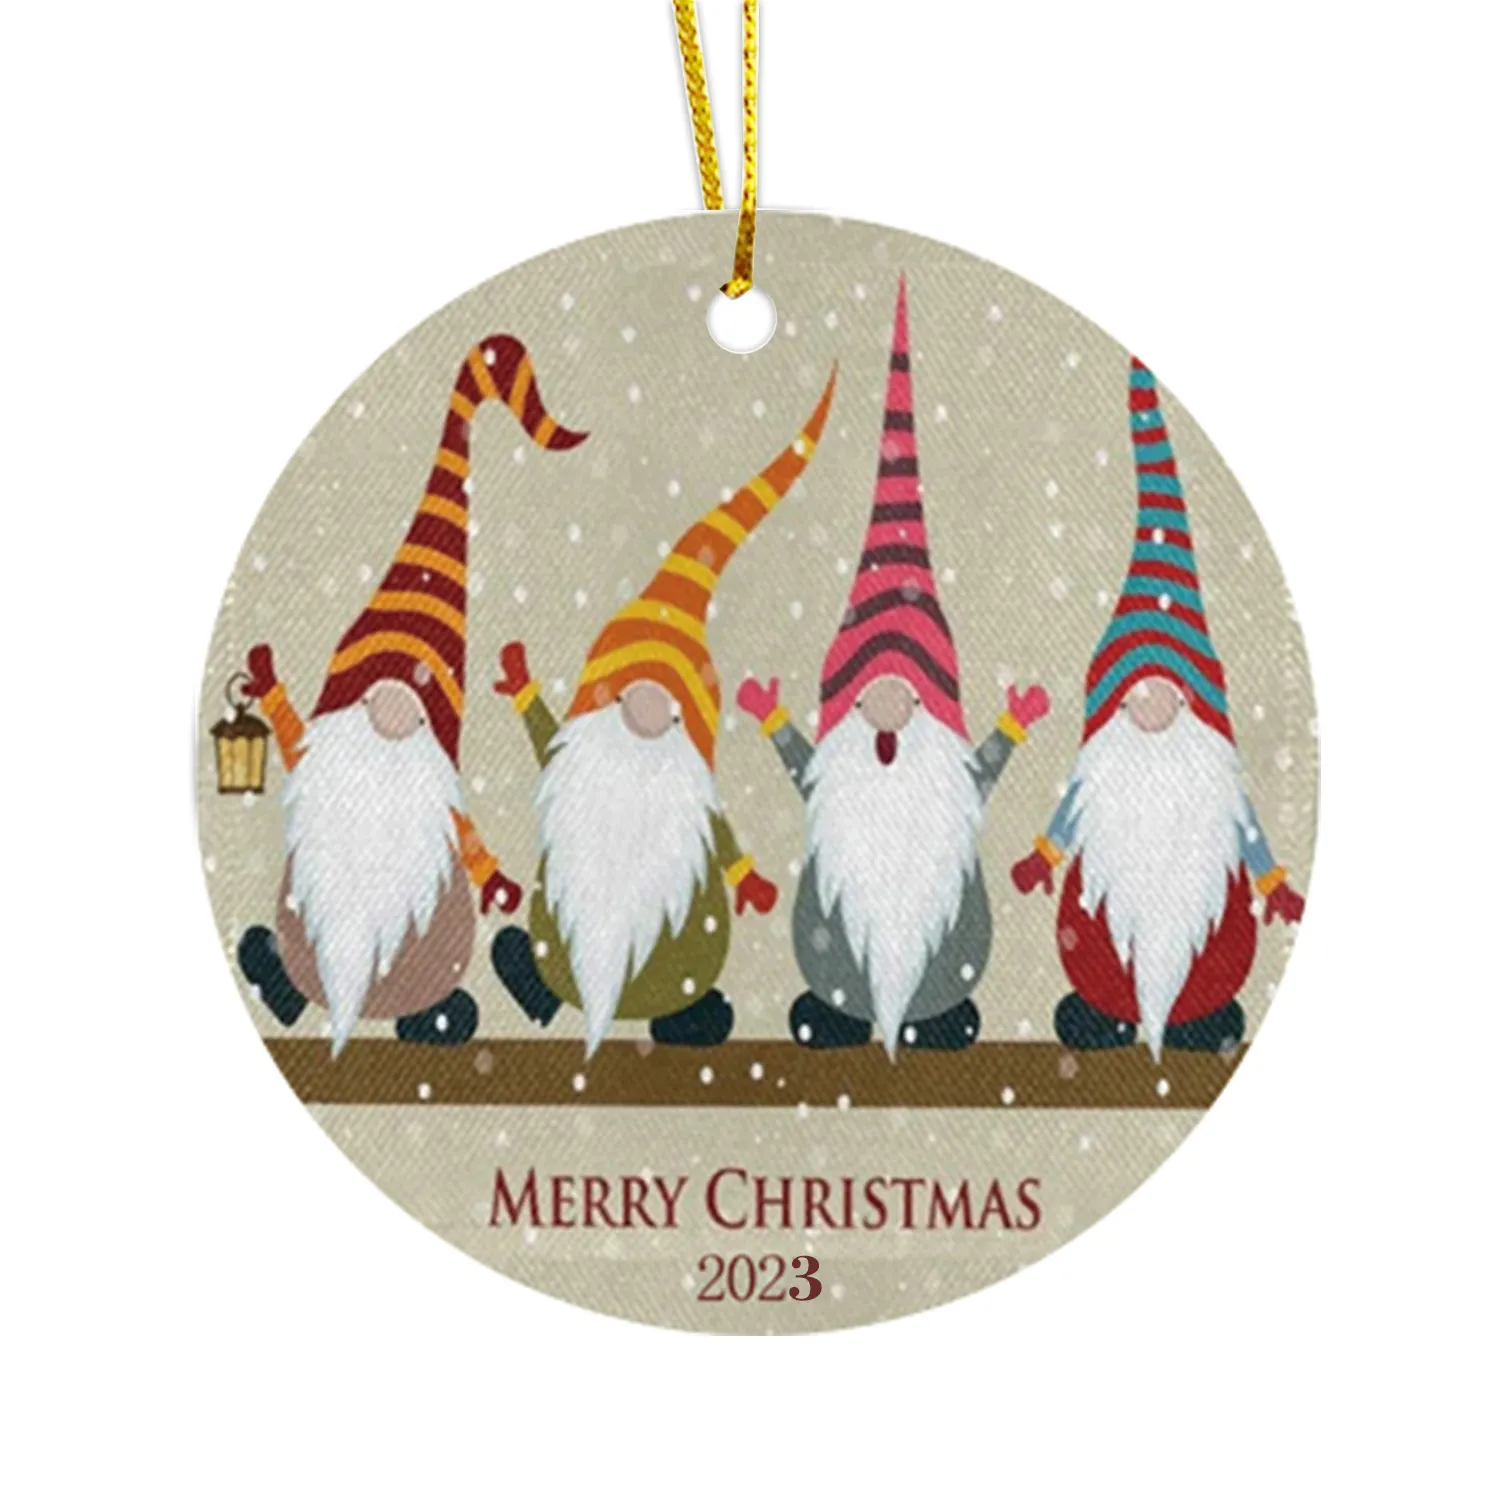 Nuevas ideas de productos navideños 2023 colgante circular de cerámica navideña de 3 pulgadas con decoración de árbol de Navidad pintada de doble cara